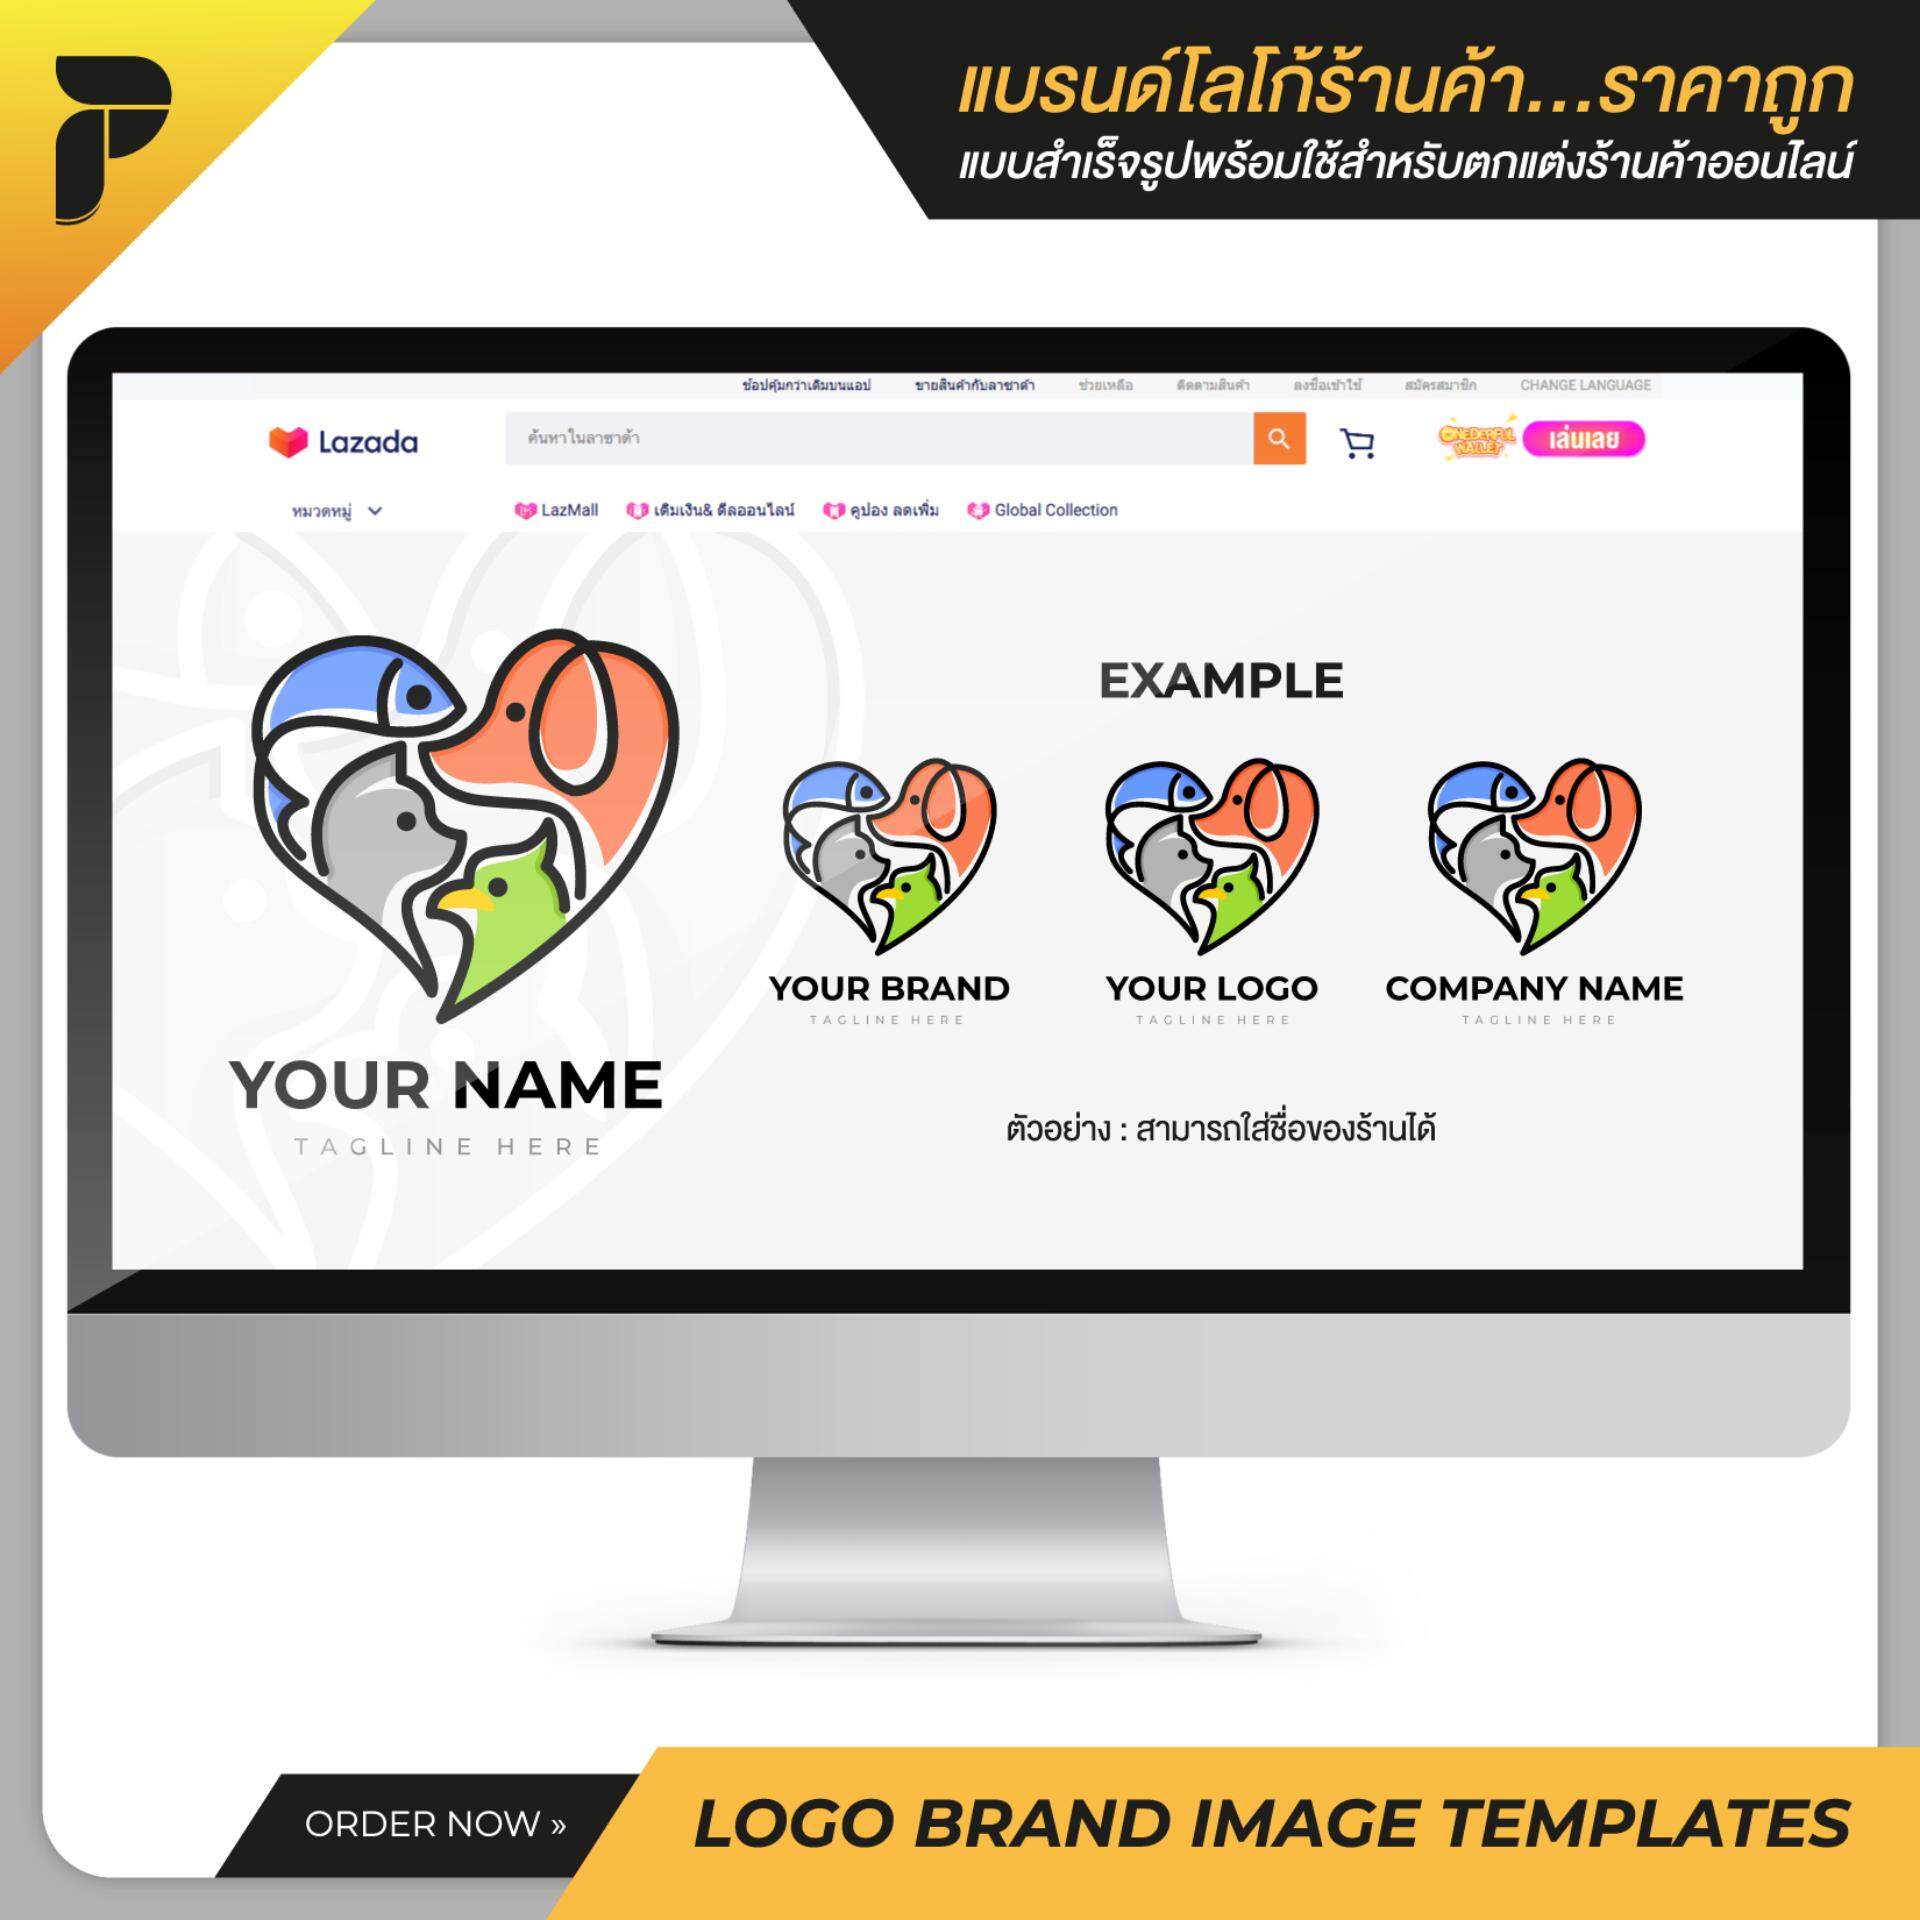 รูปโปรไฟล์ร้าน โลโก้ร้าน แบรนด์ร้านค้าสำเร็จรูปพร้อมใช้สำหรับตกแต่งร้านค้าออนไลน์ ไลน์ เฟสบุ๊ค เว็บไซต์ Profile Logo Brand Image Template Ready-to-Work by PathGraphic Studio